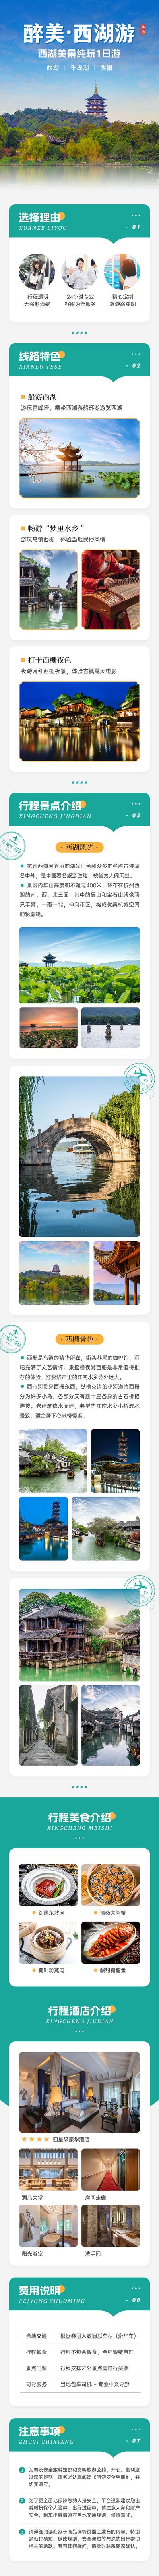 南门网 广告 海报 旅游 杭州 旅行 西湖 长图 专题 促销